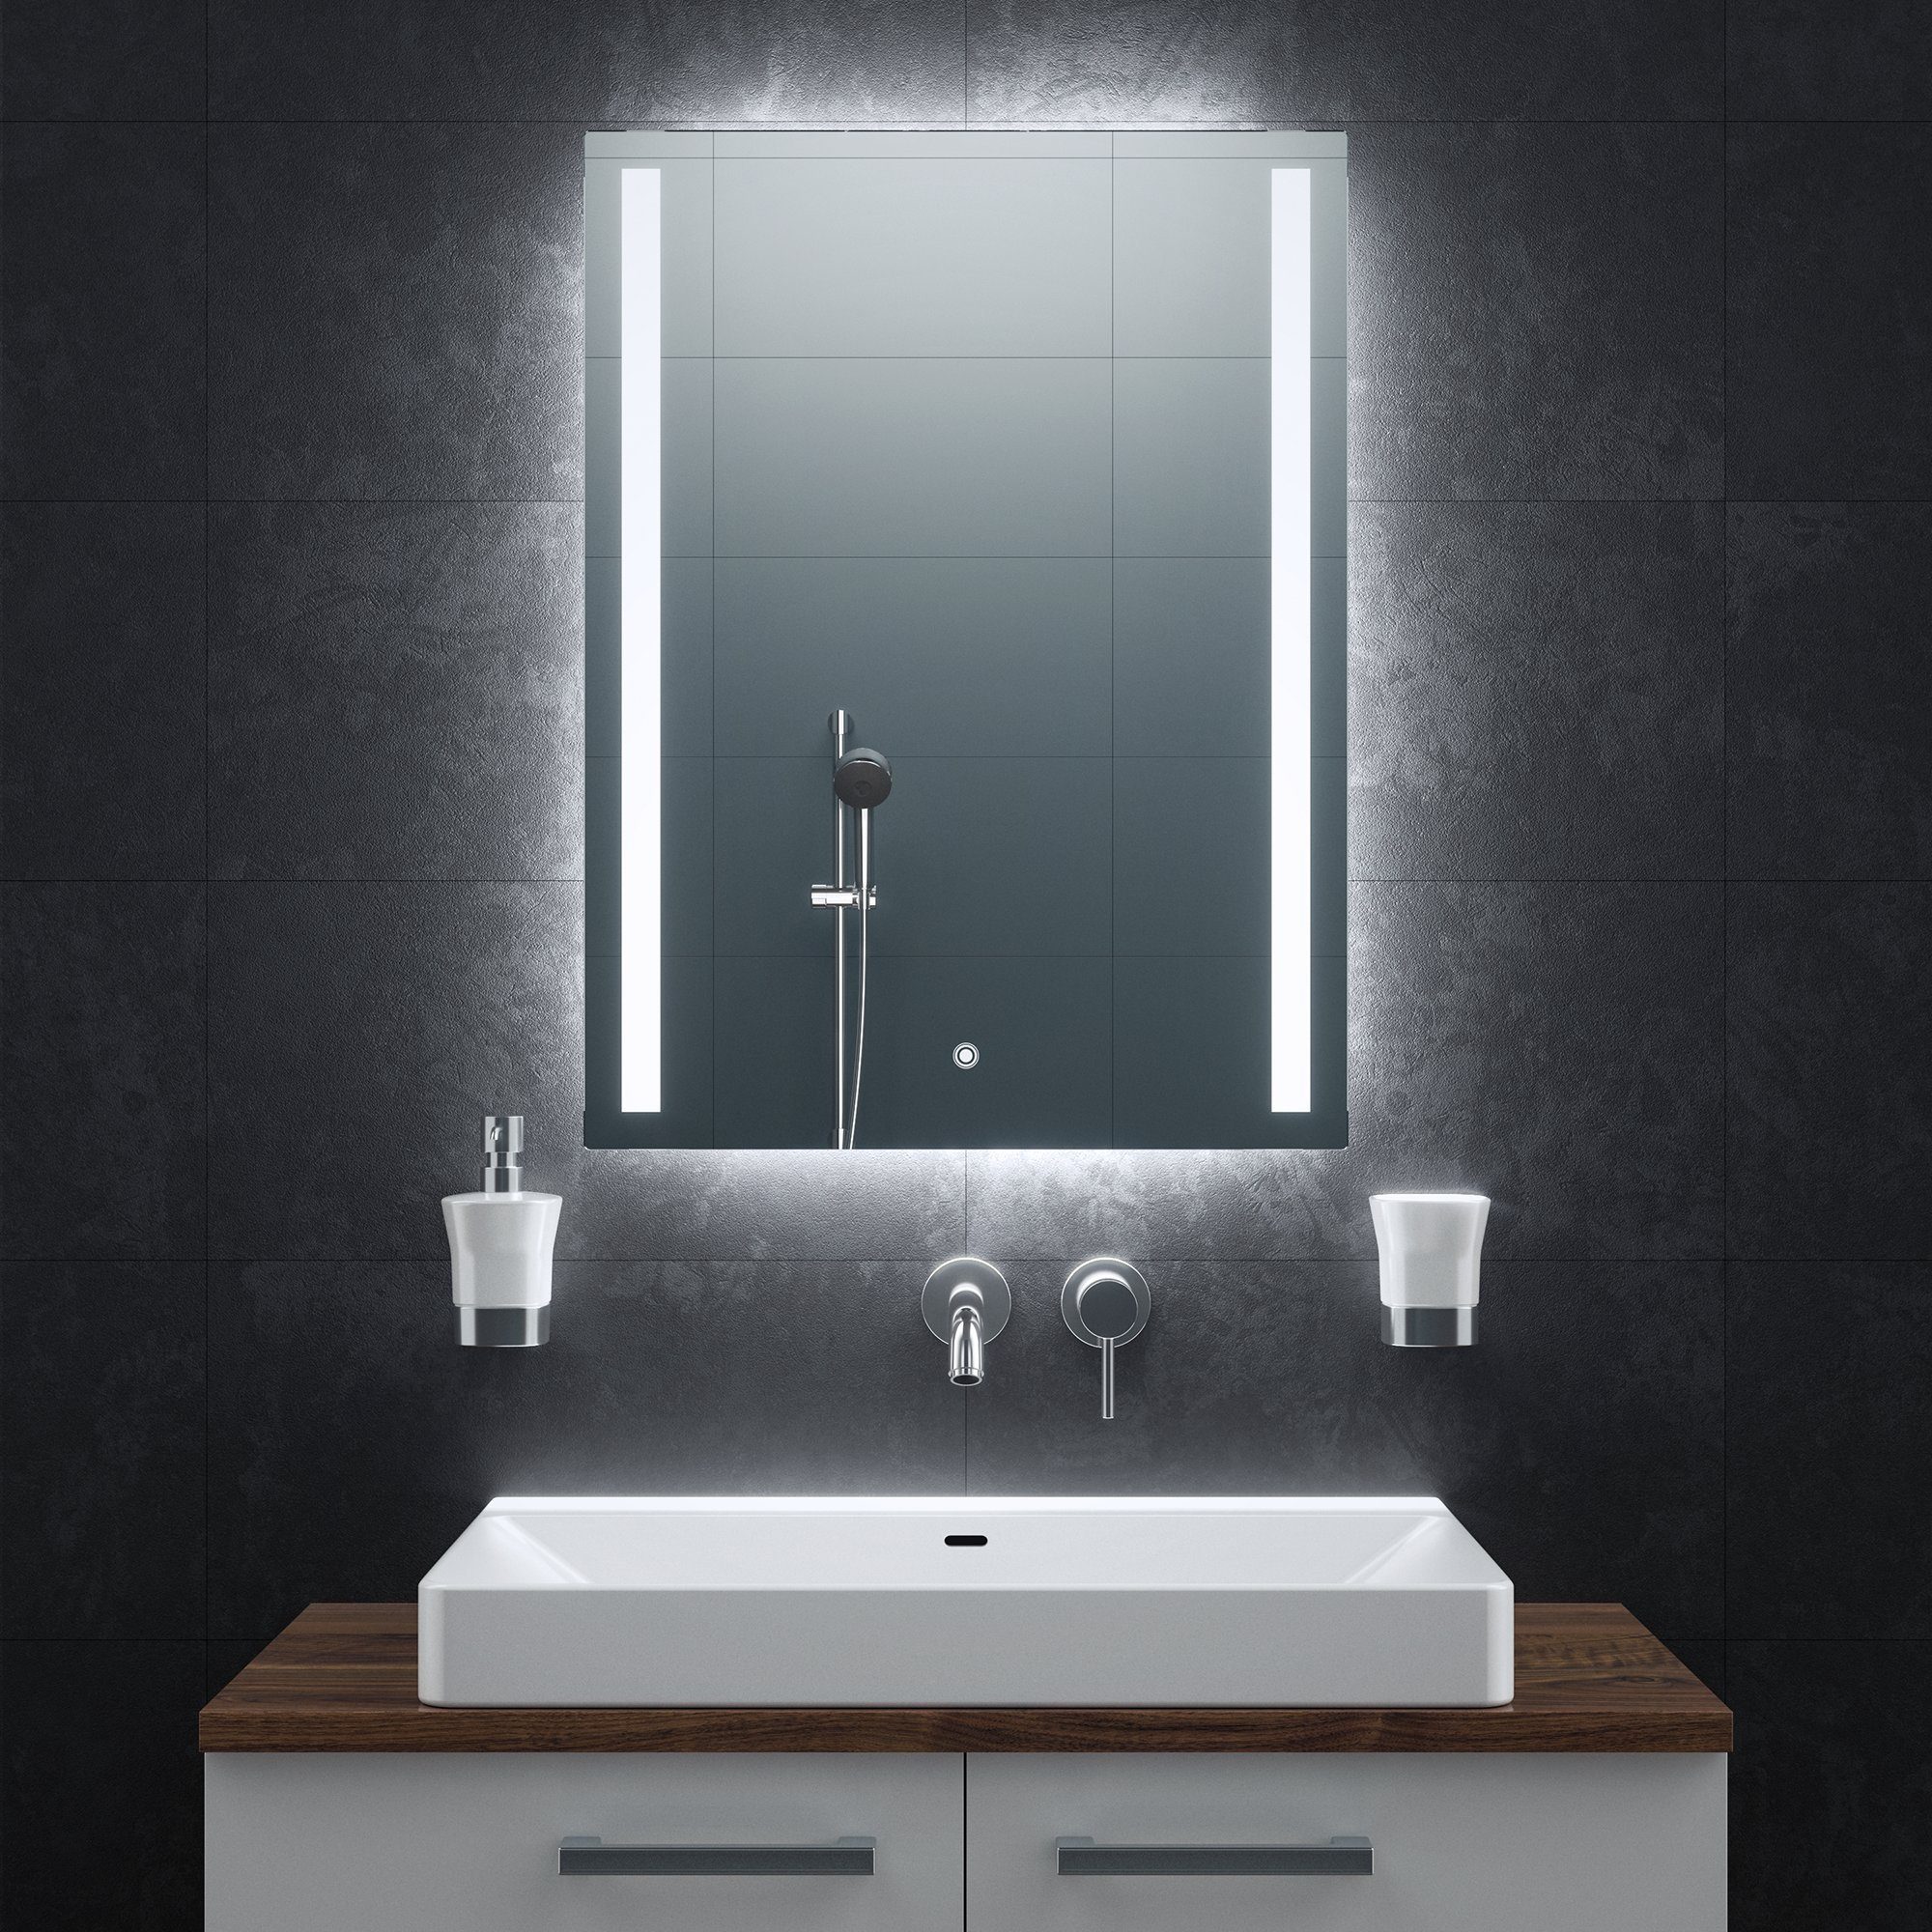 Badezimmerspiegel Badspiegel Bringer und Speicherfunktion, Anti-Beschlag 60x80cm mit BRS103,